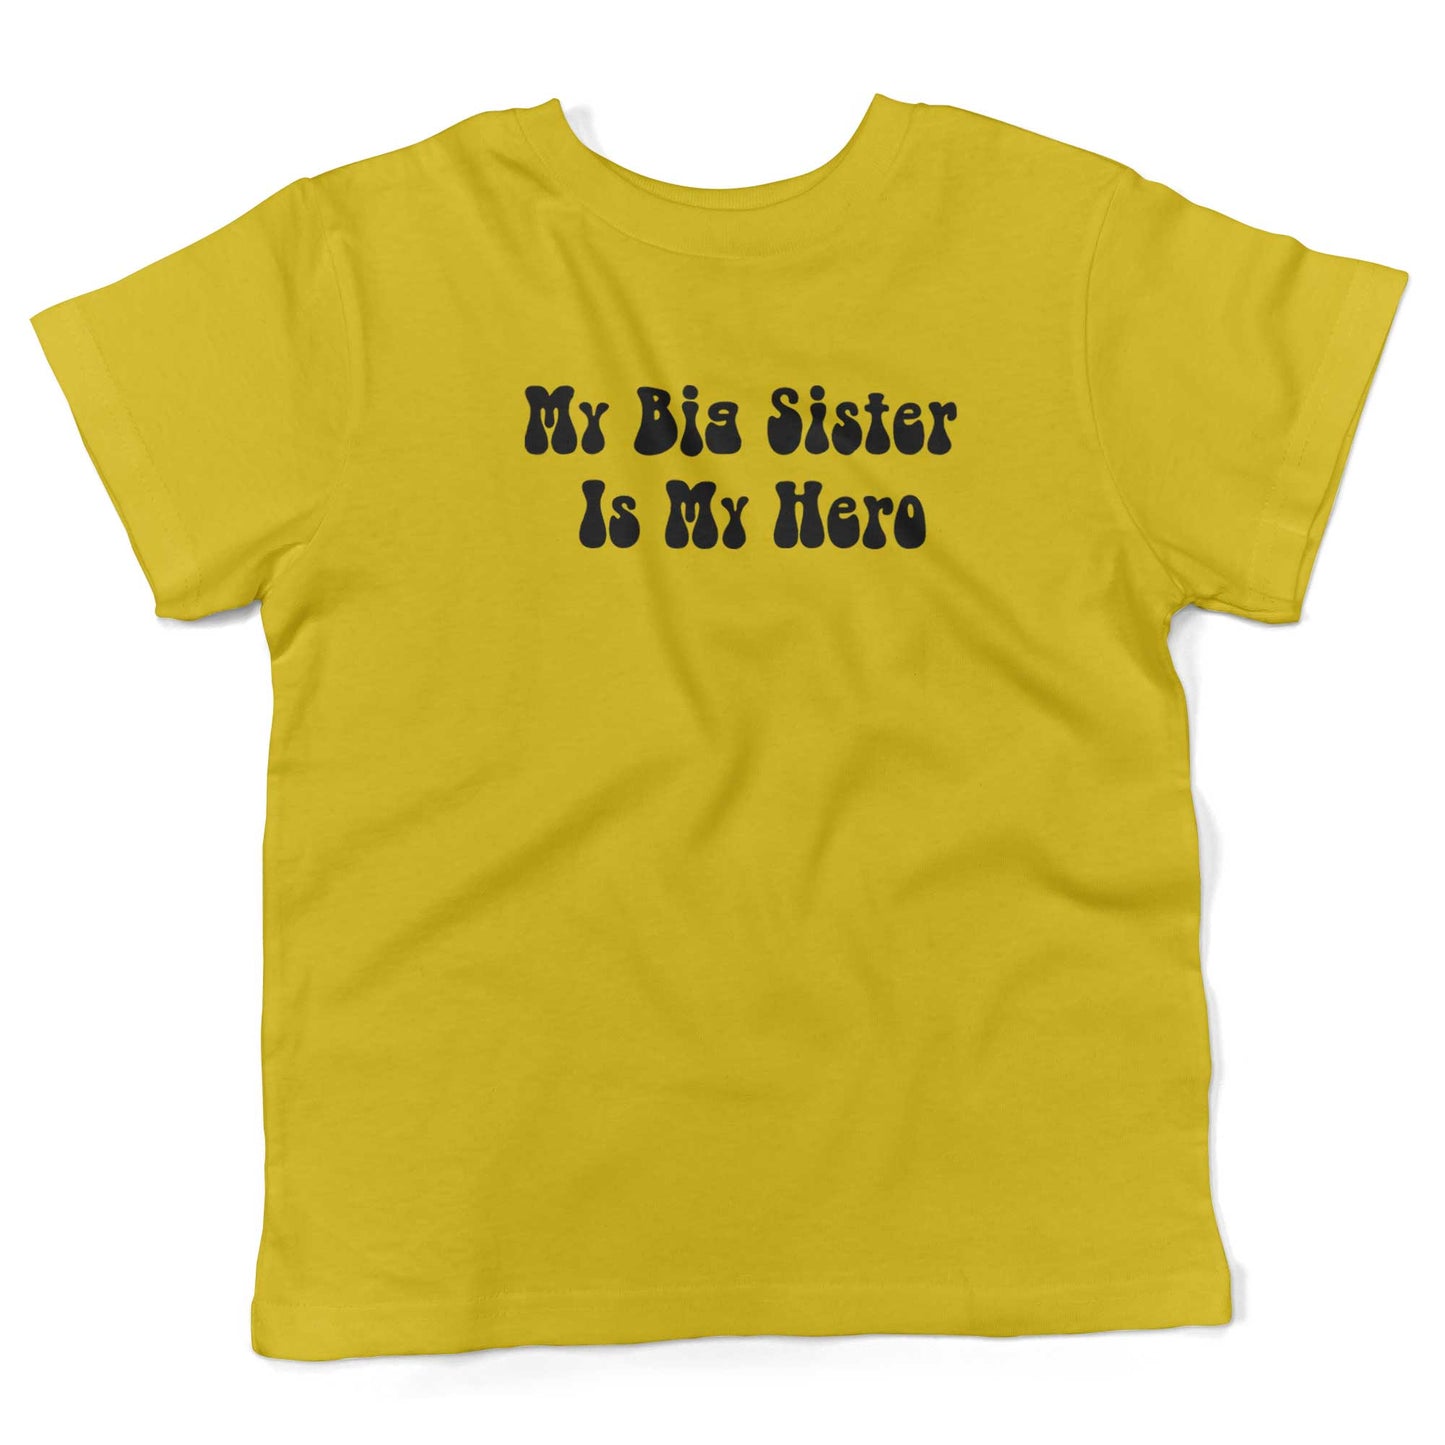 My Big Sister Is My Hero Toddler Shirt-Sunshine Yellow-2T